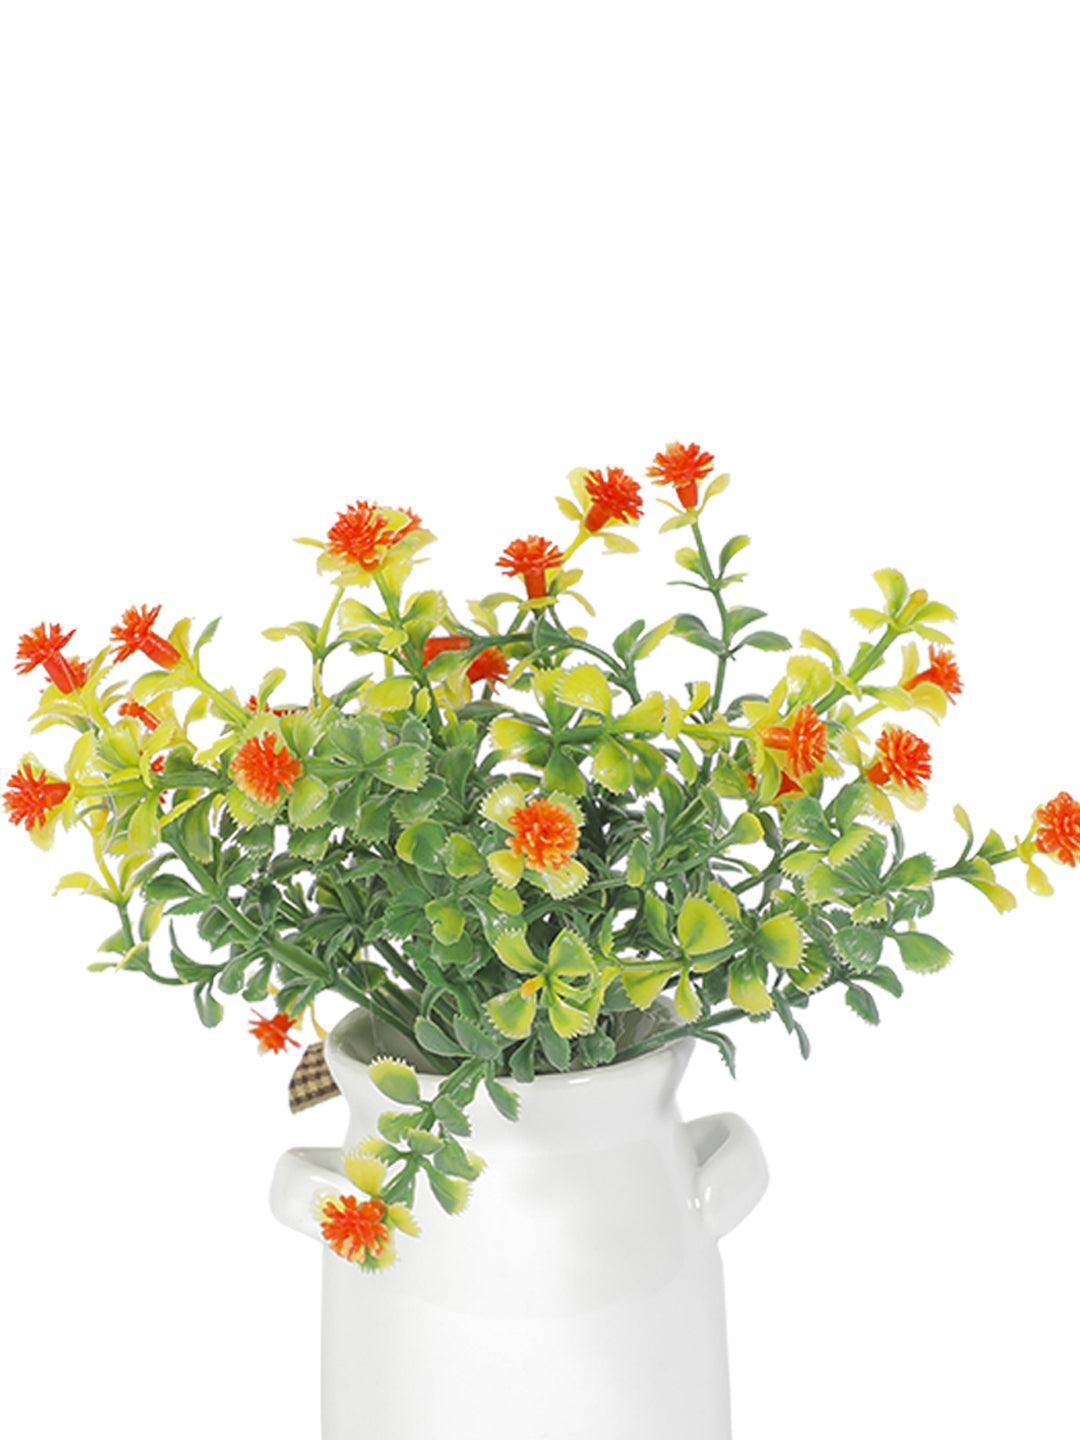 Market 99 Faux Potted Flower Plants For Tabletop Dã©Cor - MARKET 99